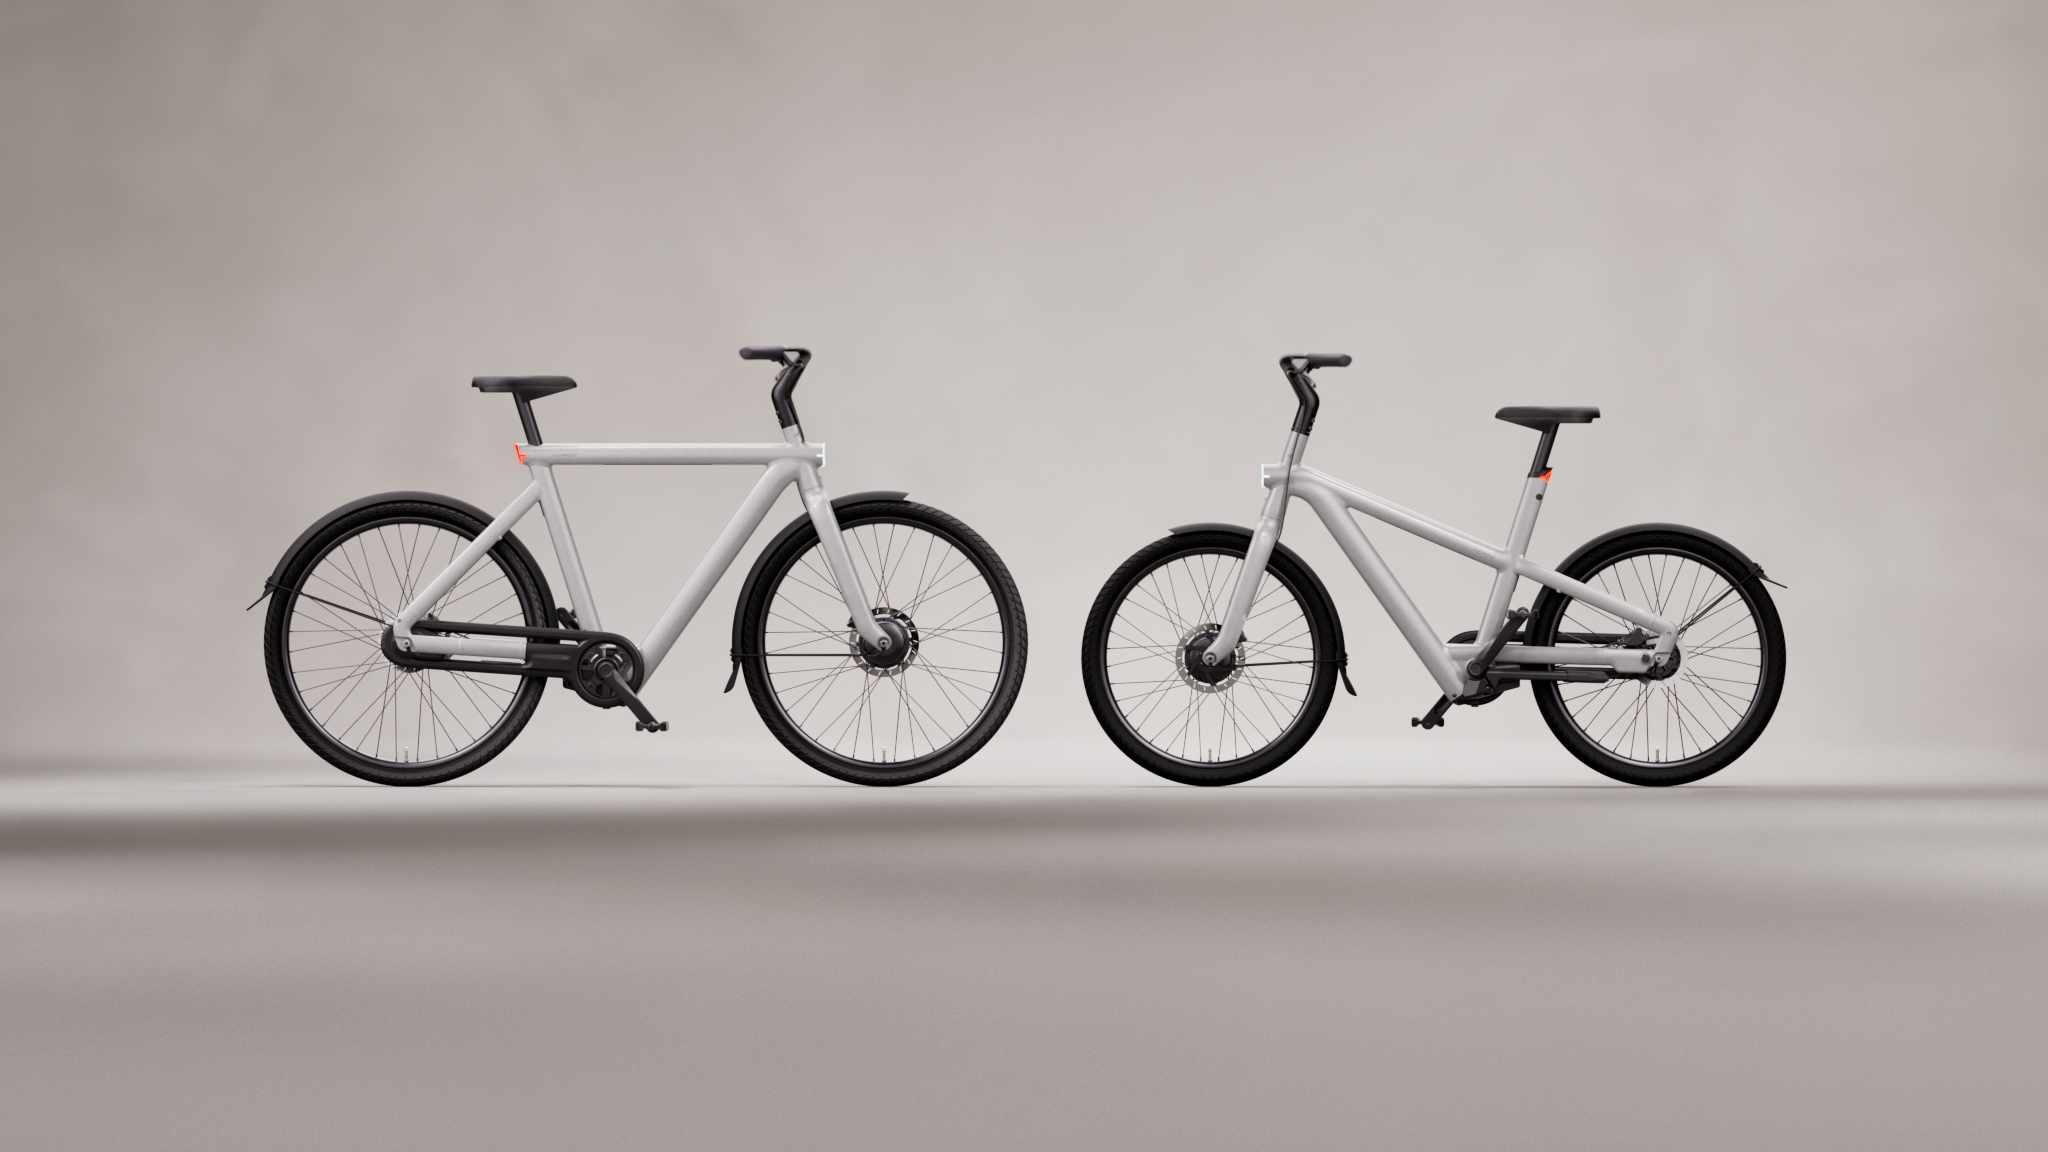 自転車を超えていく新しいノリモノ。VanMoof｢S5/A5｣発表